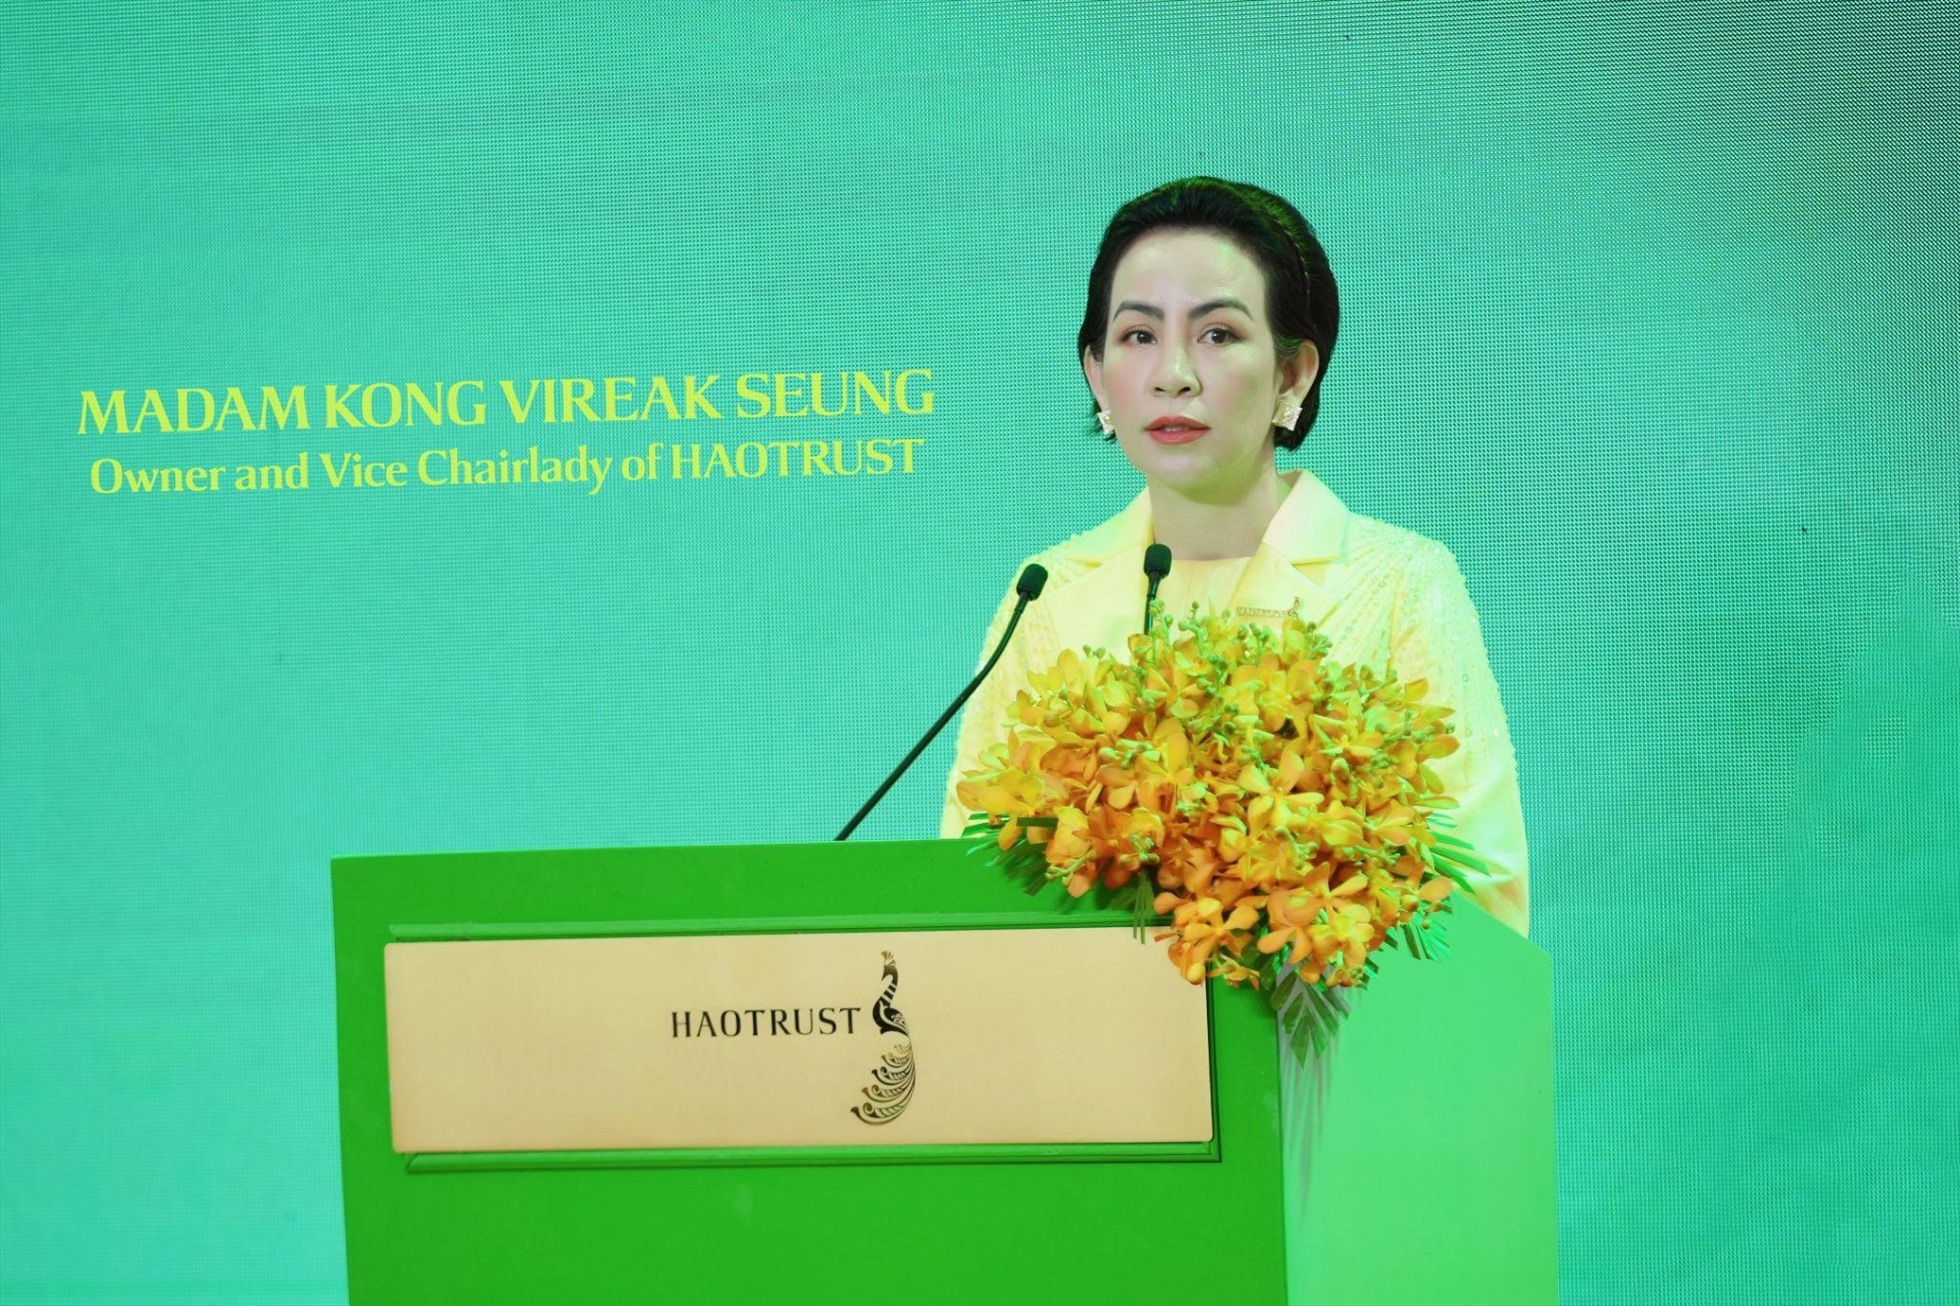 Madam Kong Vireak Seung - Chủ tịch sáng lập, Phó Chủ tịch HĐQT HAOTRUST phát biểu trong lễ ra mắt Quỹ HAOTRUST.